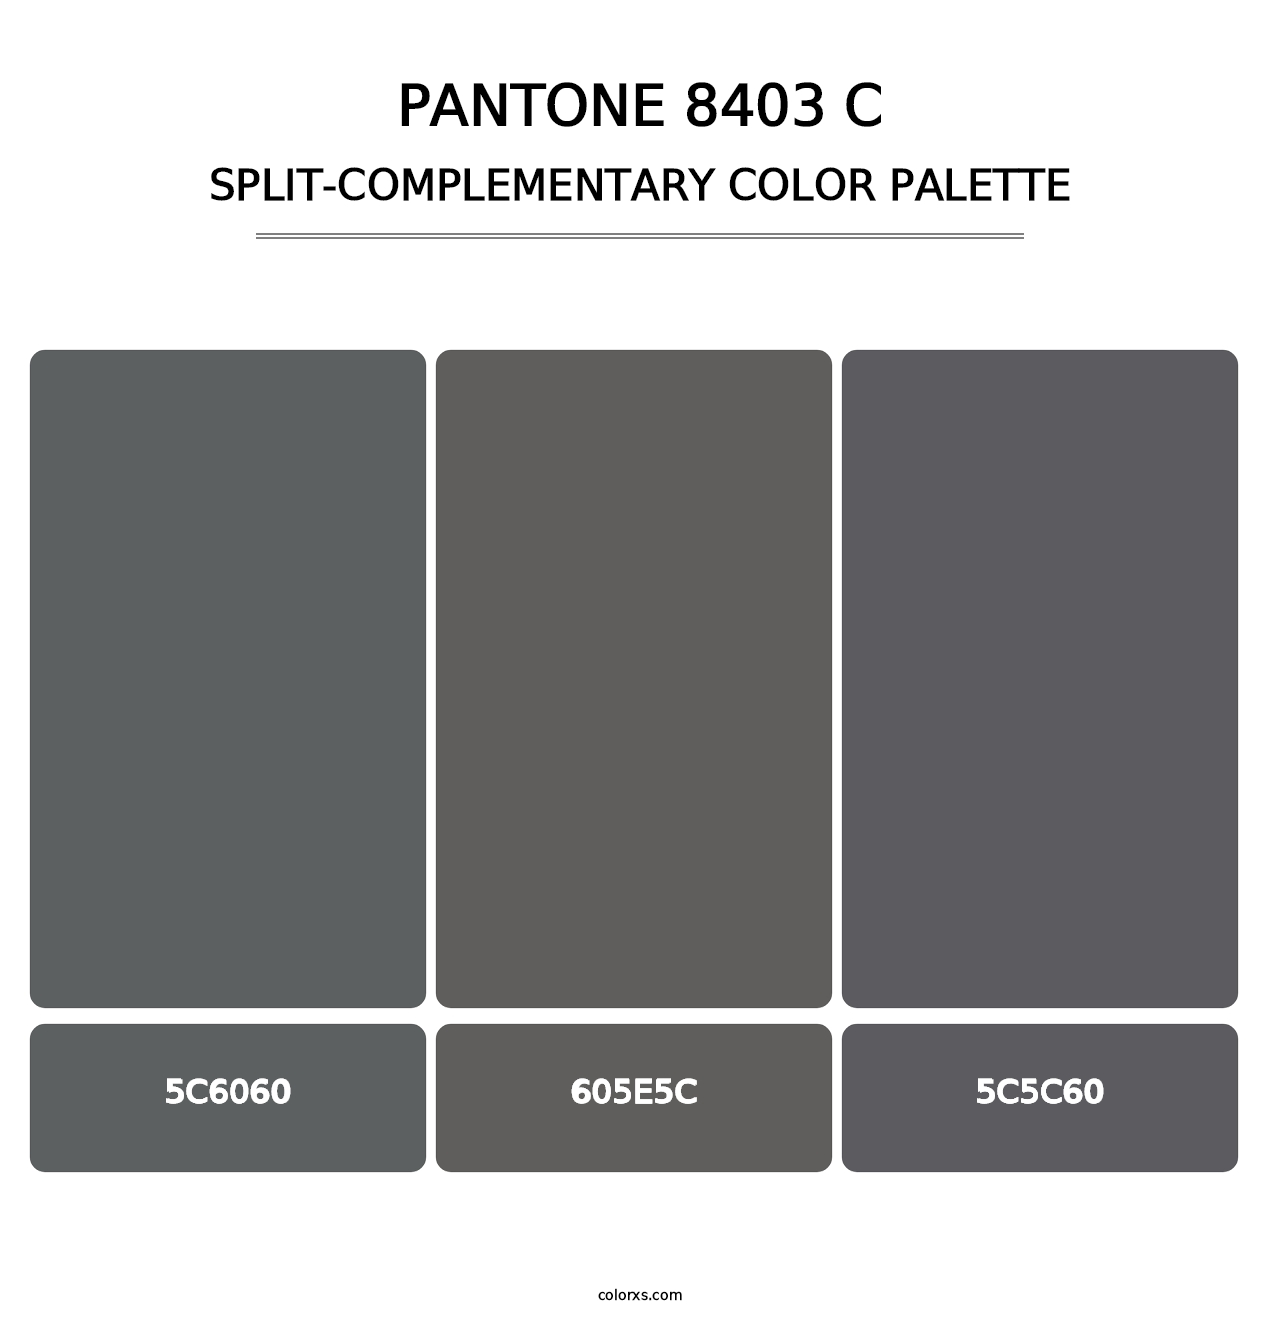 PANTONE 8403 C - Split-Complementary Color Palette